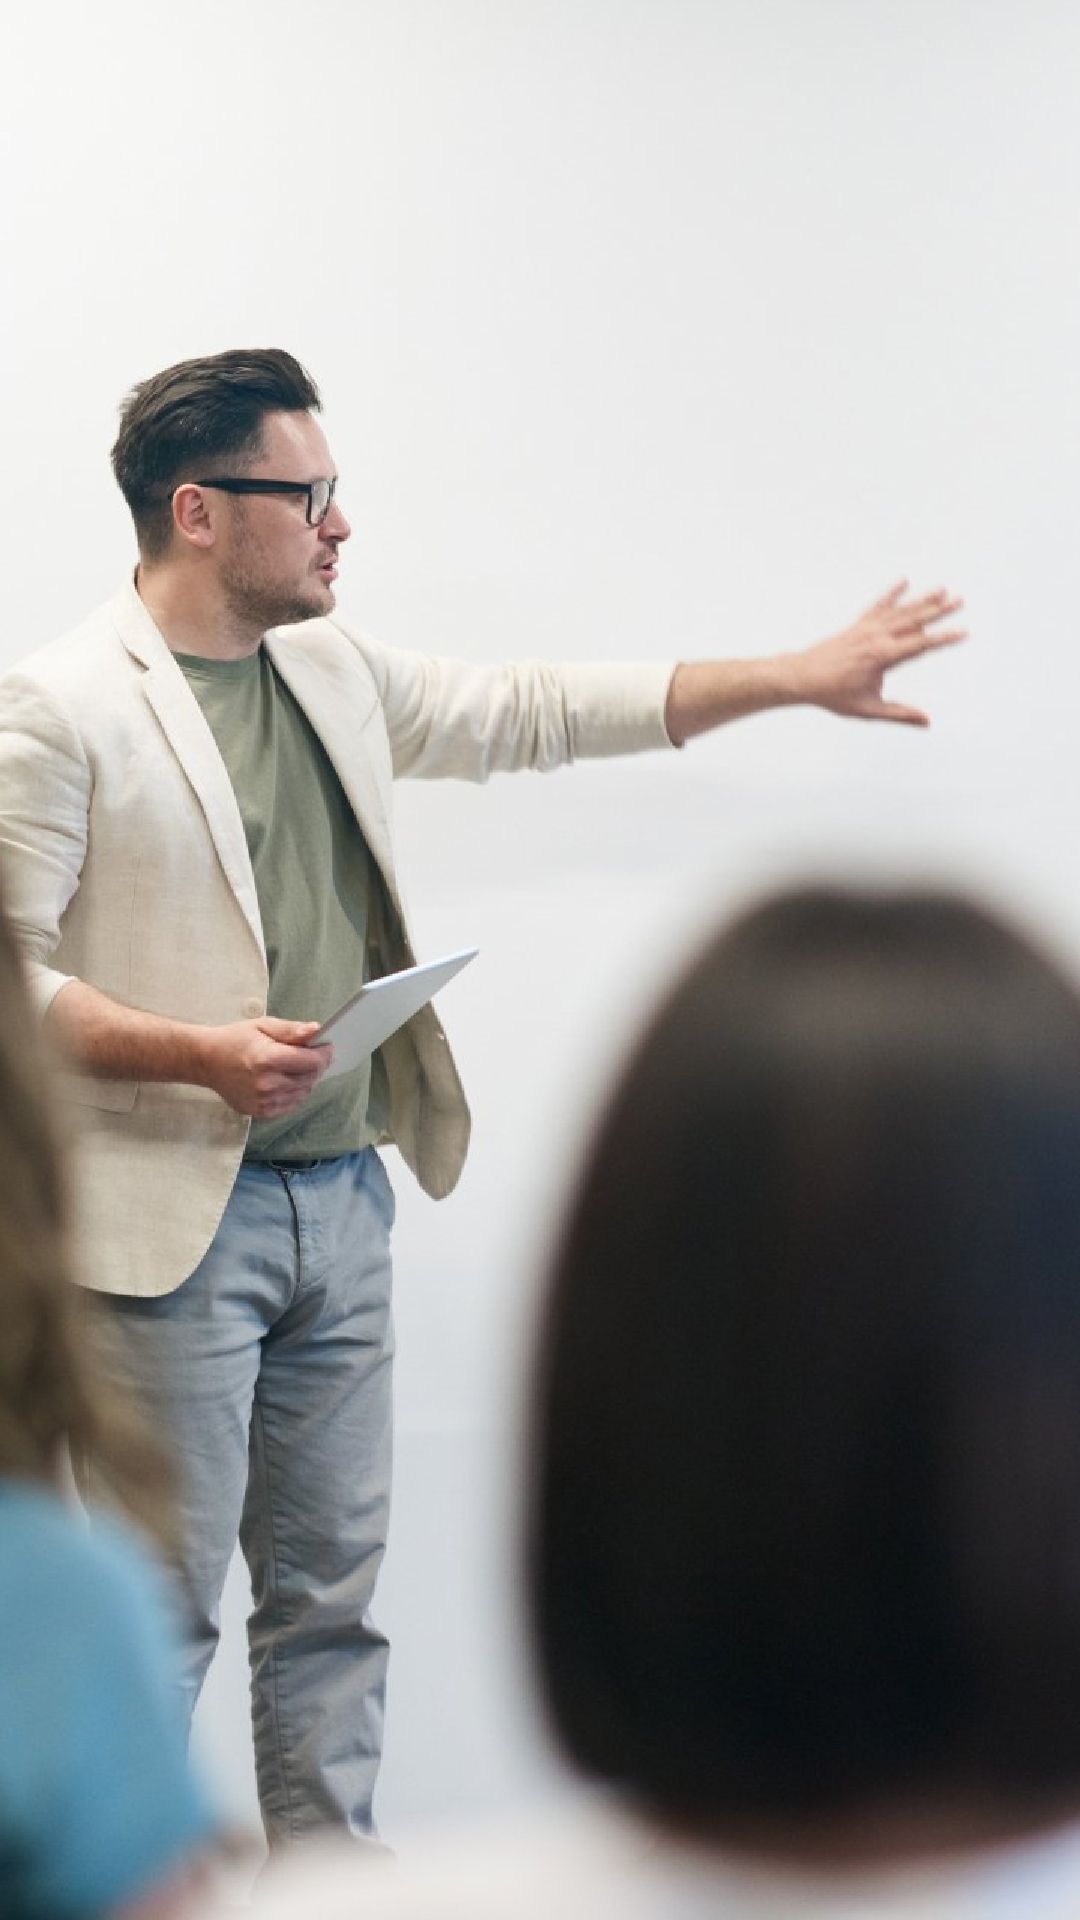 Un uomo sta facendo una presentazione a un gruppo di persone in una classe.